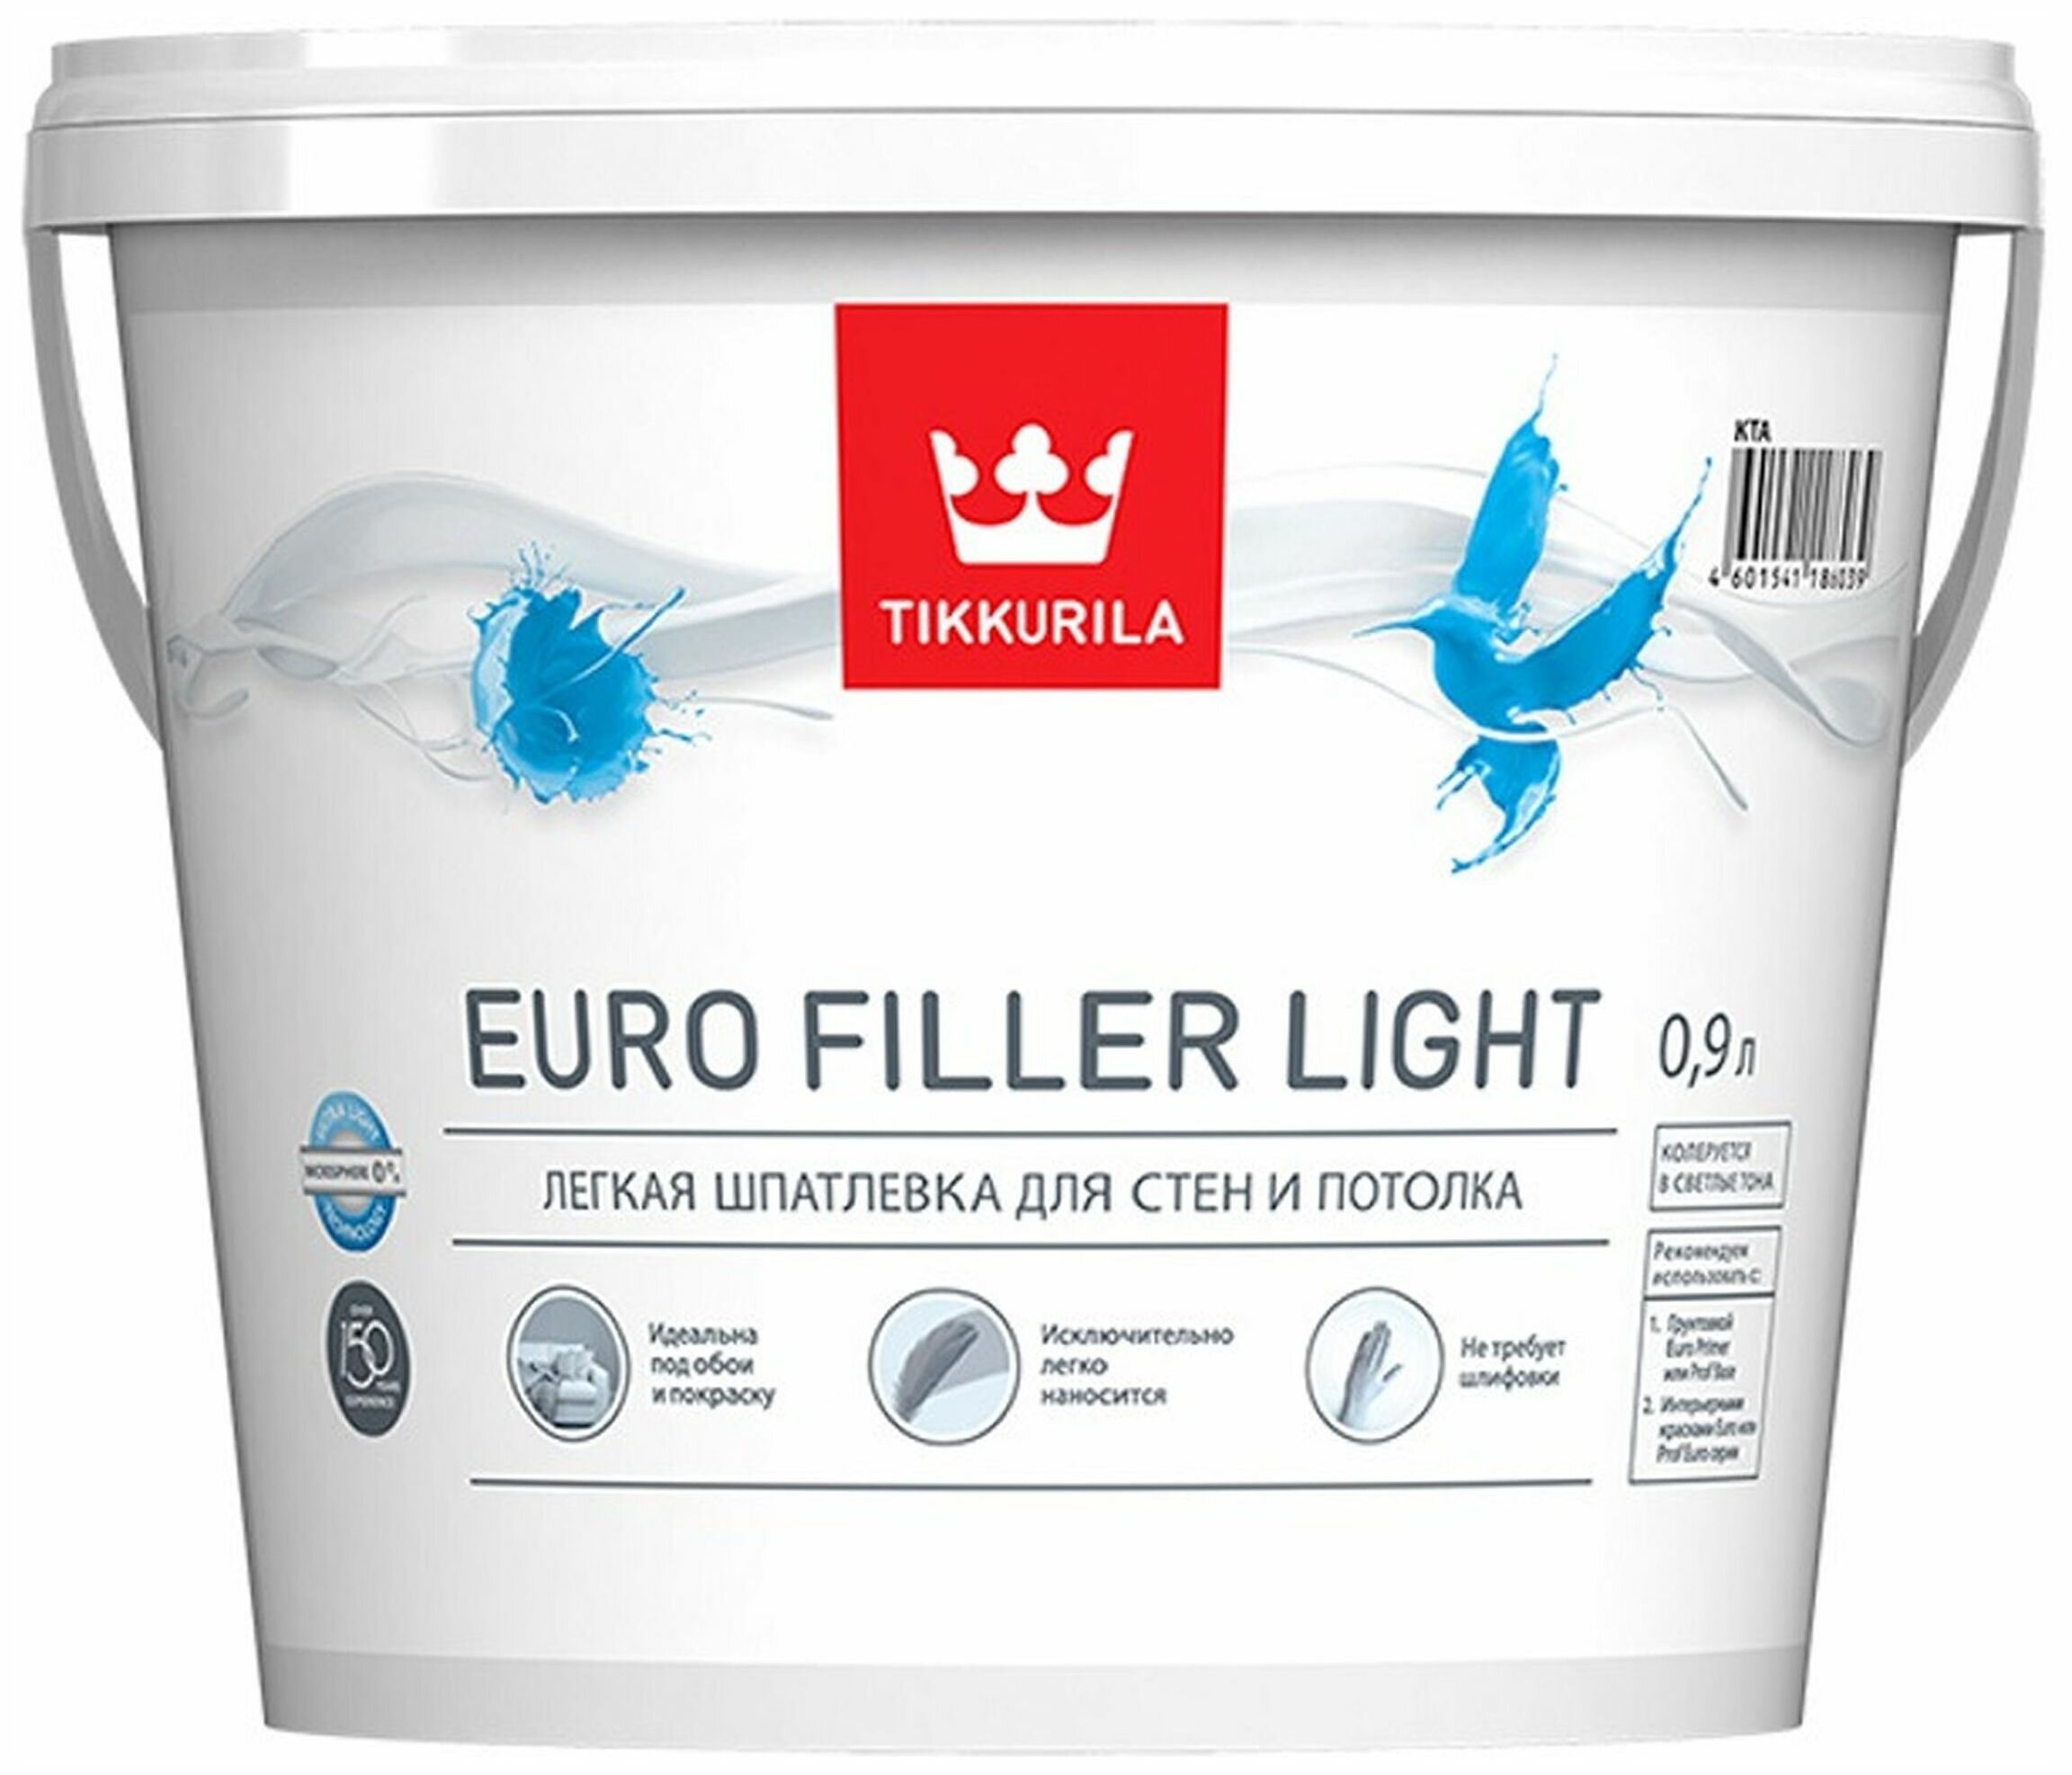    Tikkurila Euro Filler Light  0,9